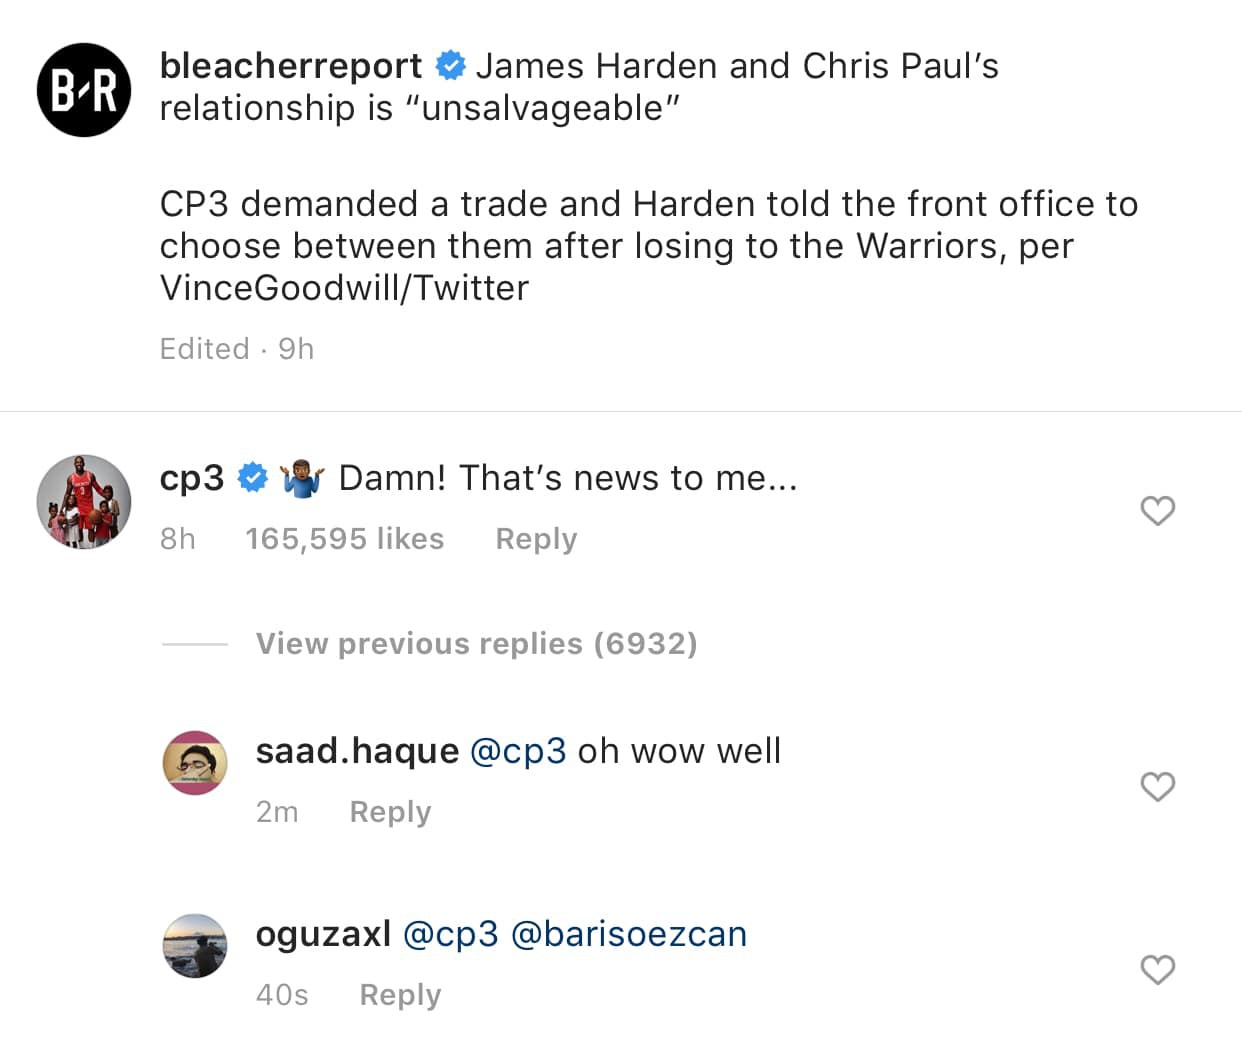 Chris Paul lên tiếng trước tin đồn bất hòa với James Harden - Ảnh 3.